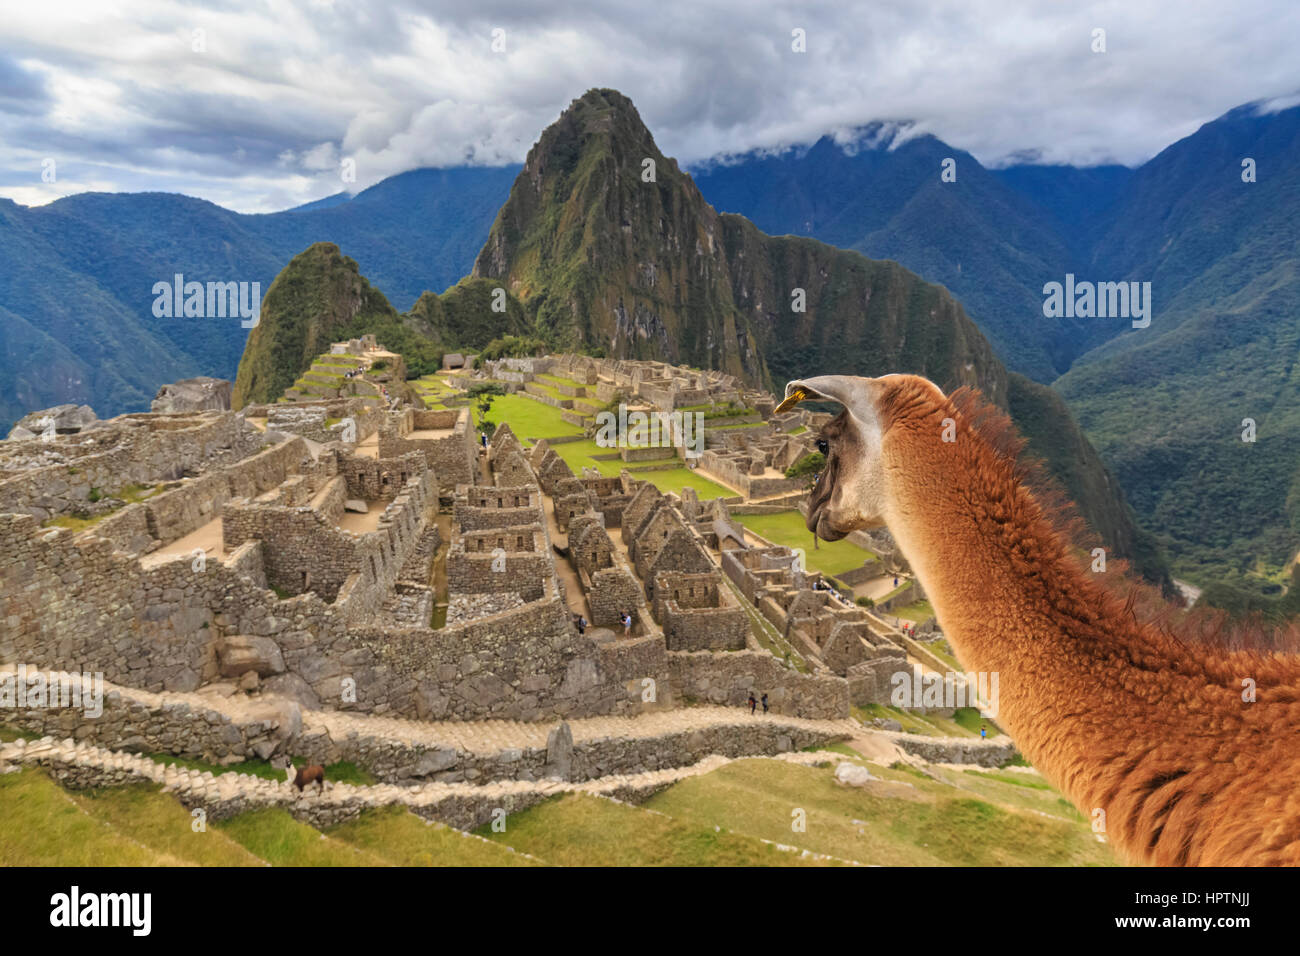 Peru, Andes, Urubamba Valley, llama at Machu Picchu with mountain Huayna Picchu Stock Photo